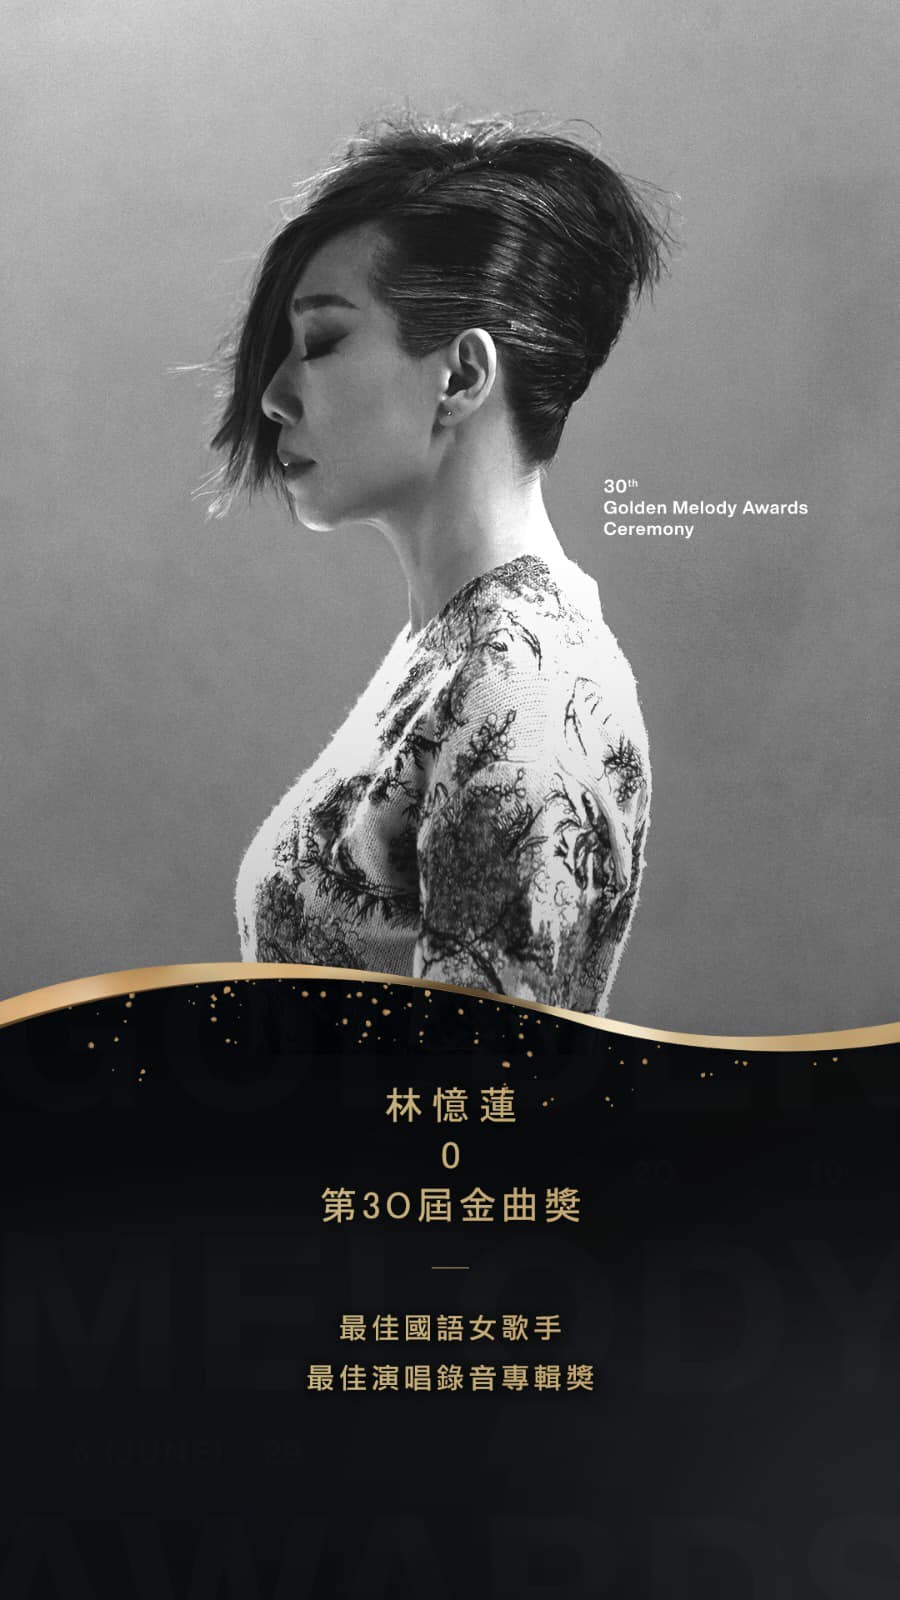 林忆莲翌年获得台湾《第30届金曲奖》之“最佳国语女歌手奖”及“最佳演唱录音专辑奖”。